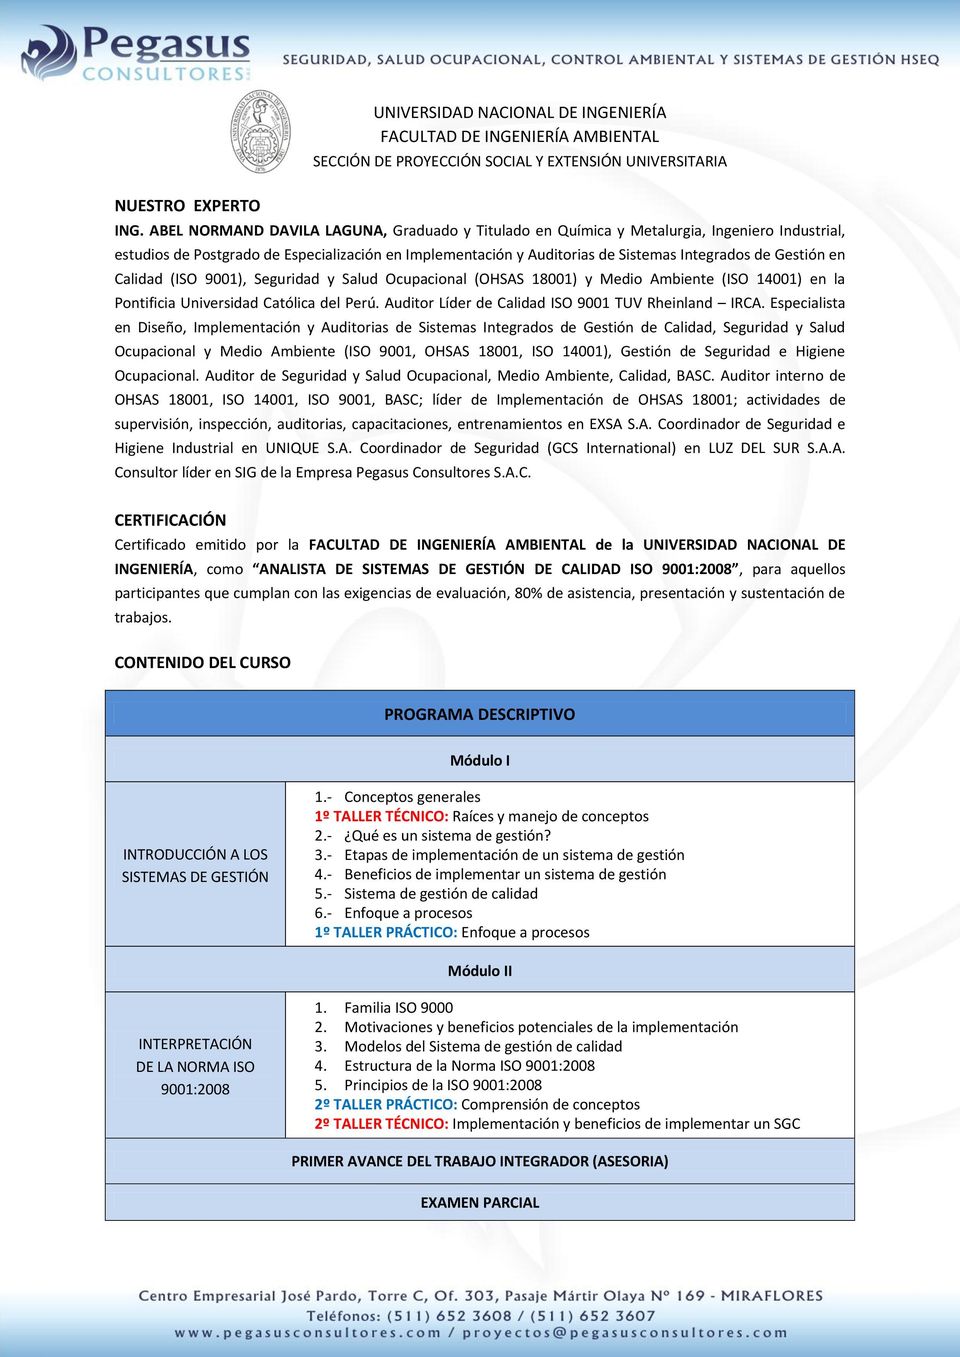 Gestión en Calidad (ISO 9001), Seguridad y Salud Ocupacional (OHSAS 18001) y Medio Ambiente (ISO 14001) en la Pontificia Universidad Católica del Perú.